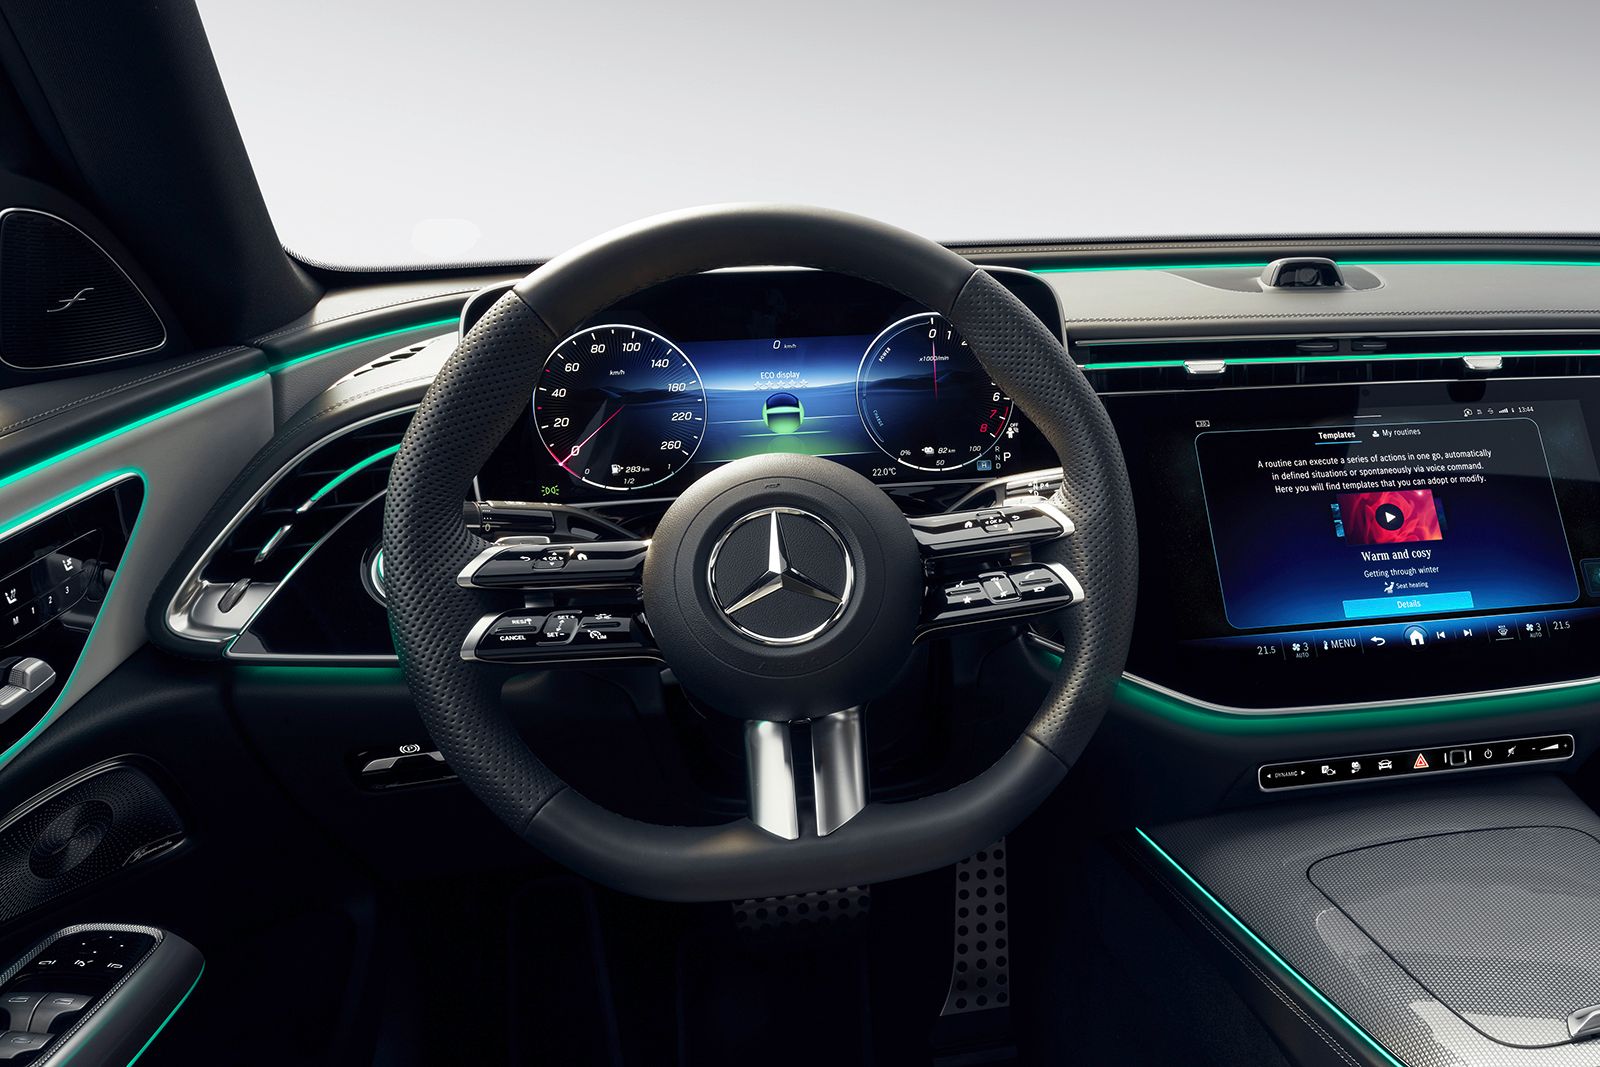 Mercedes E-Class interior concept